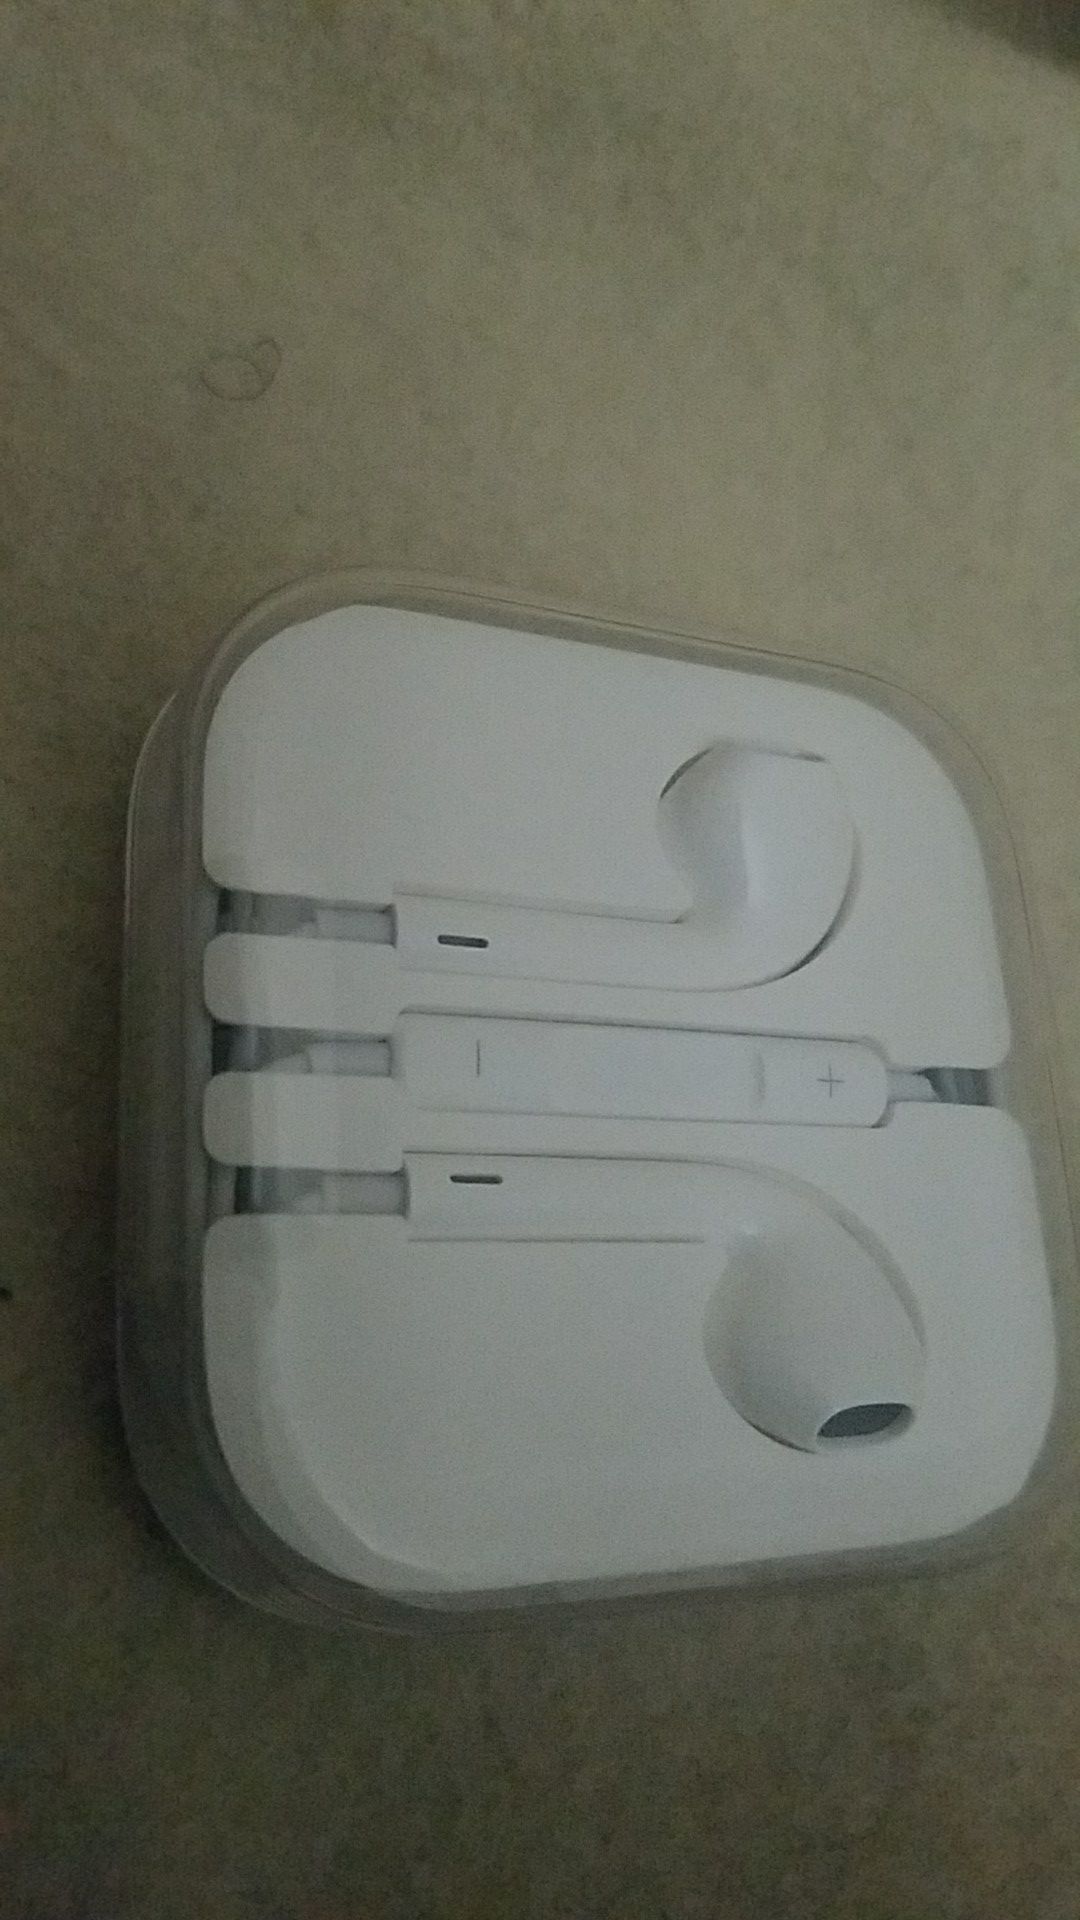 Apple headphones new never used